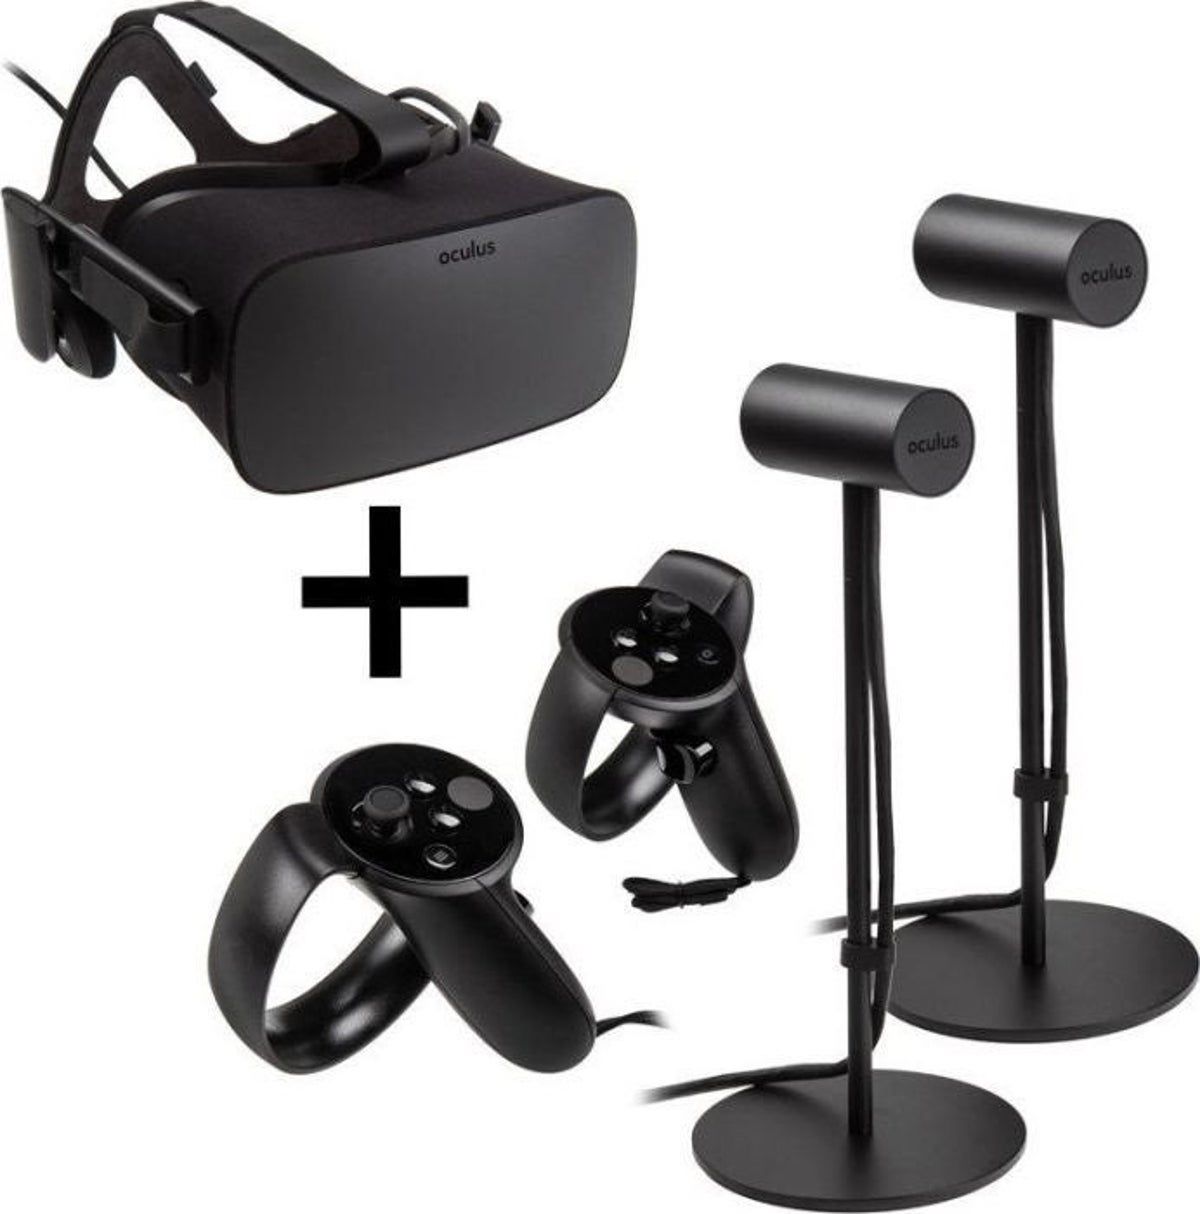 Konzole Oculus Rift - brýle, počítač, pohybový senzor a ovladače